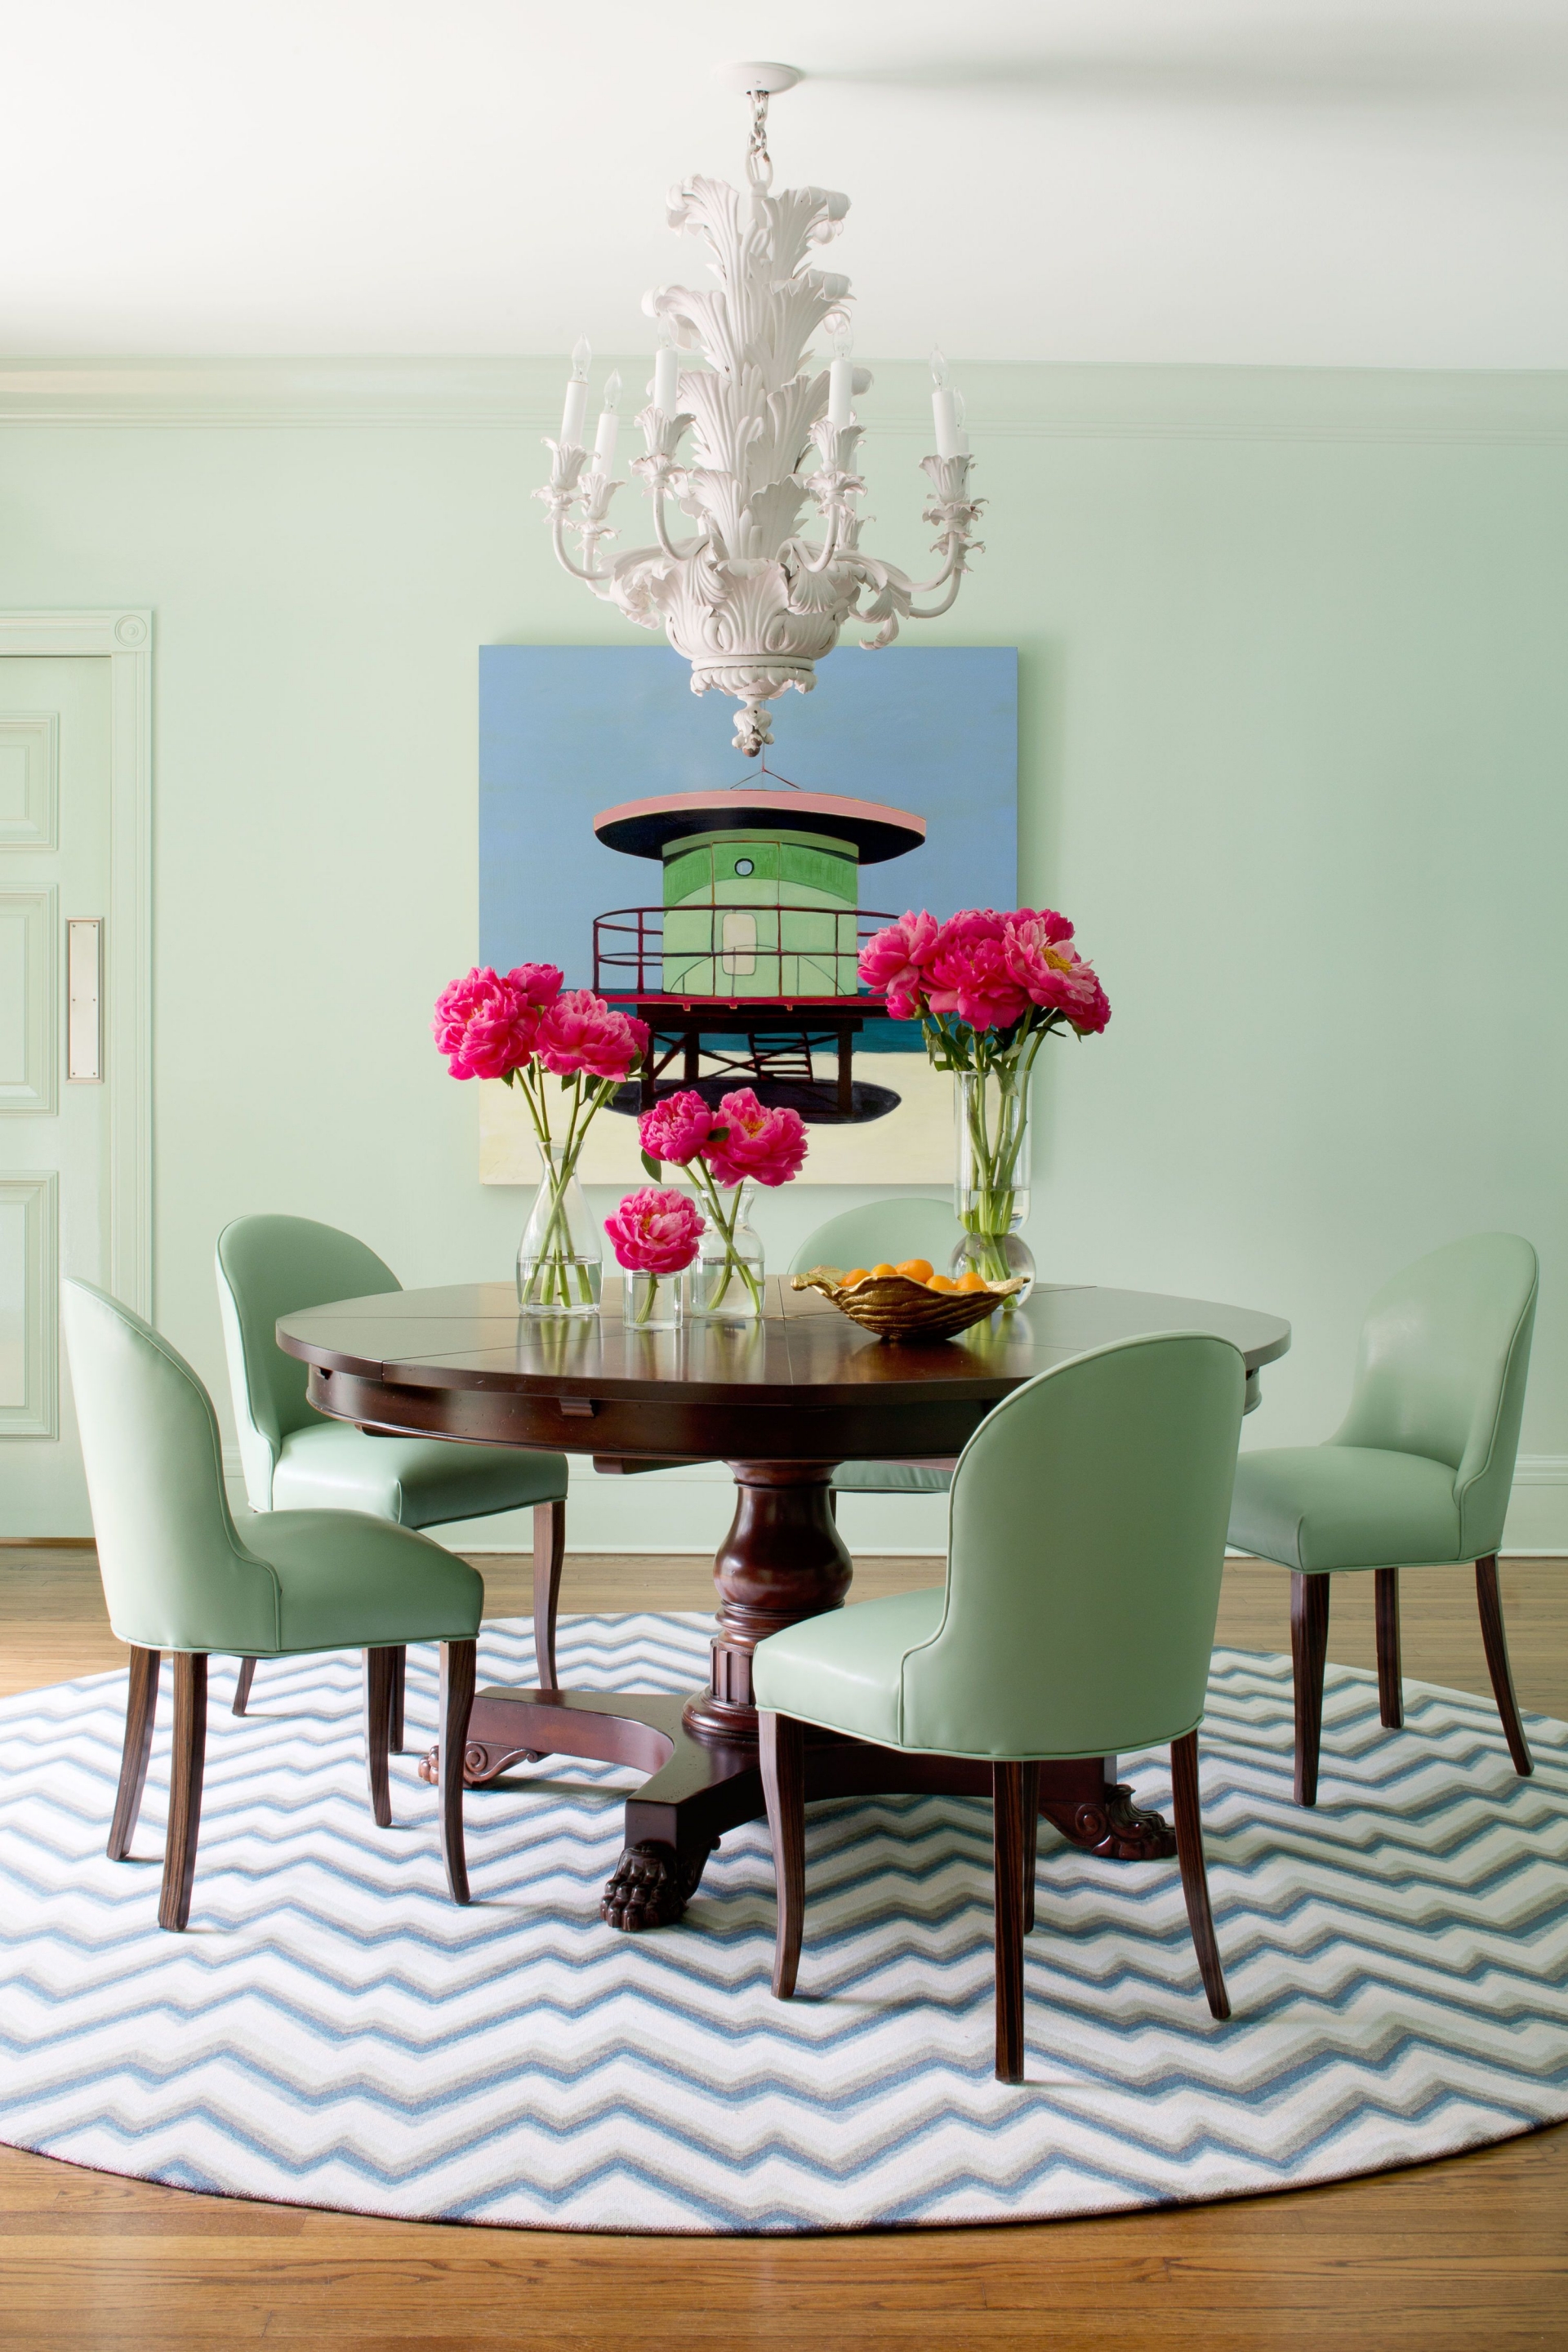 Xanh bạc hà mang một vẻ đẹp nhẹ nhàng, mát mẻ, dễ dàng kết hợp với nhiều sắc màu nội thất xung quanh. Và phòng ăn này đã minh chứng cho việc nó kết hợp rất tối với các sắc thái gỗ nâu trầm ấm, xanh lam và cả màu hồng đậm của hoa tươi.